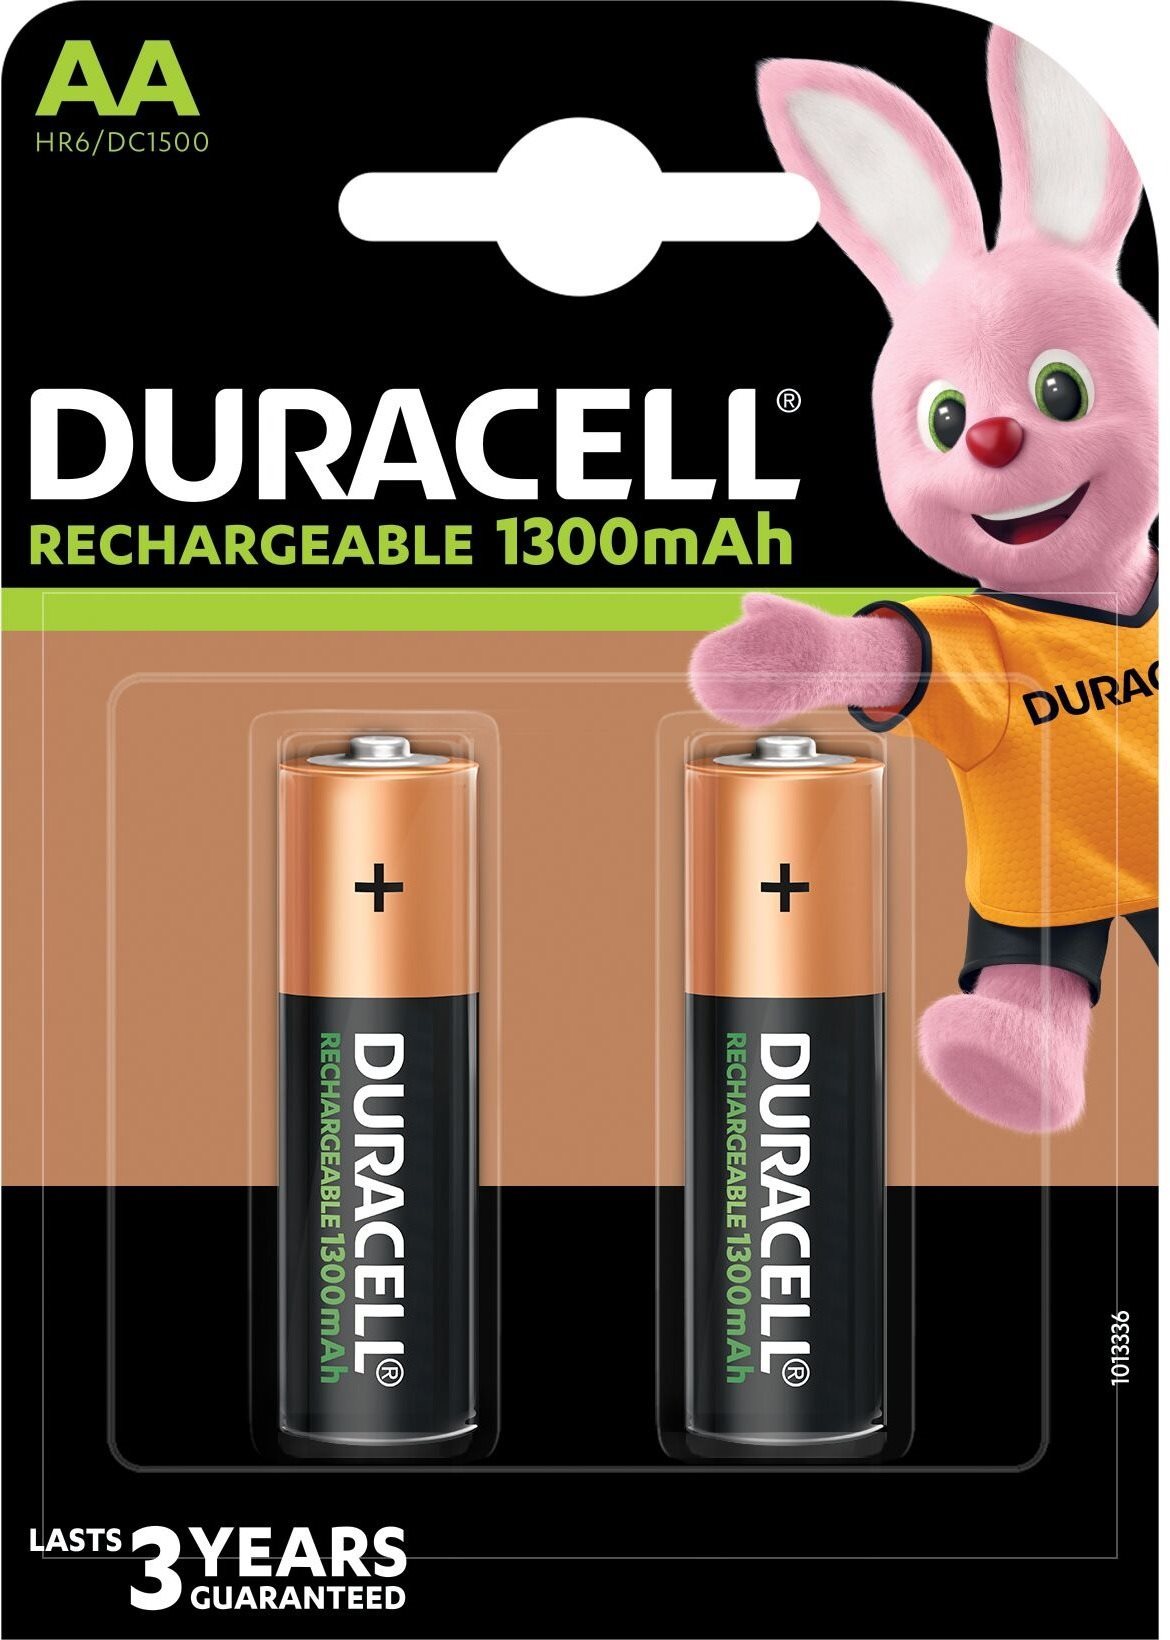 Tölthető elem Duracell Rechargeable elem 2500 mAh 2 db (AA)